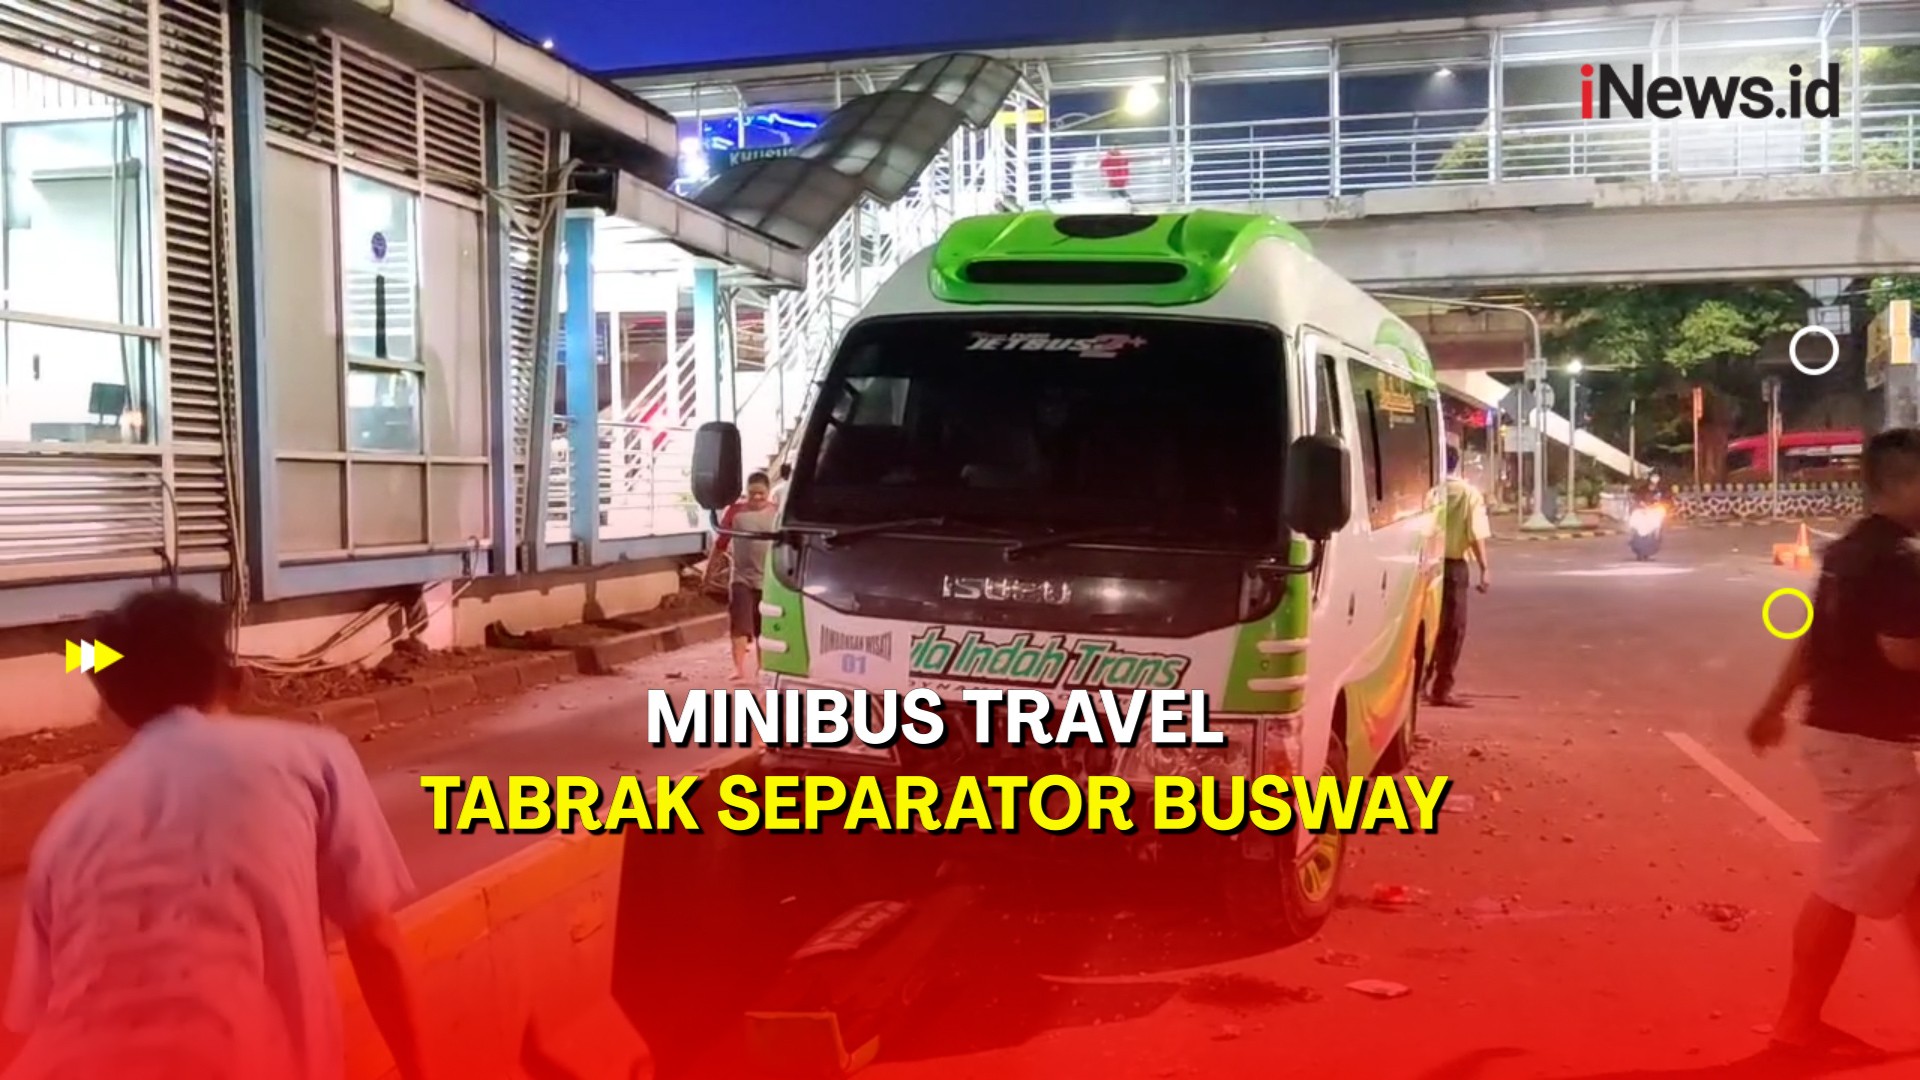 Minibus Travel Tabrak Separator Busway di Jaktim, Diduga Karena Minim Rambu Lalu Lintas